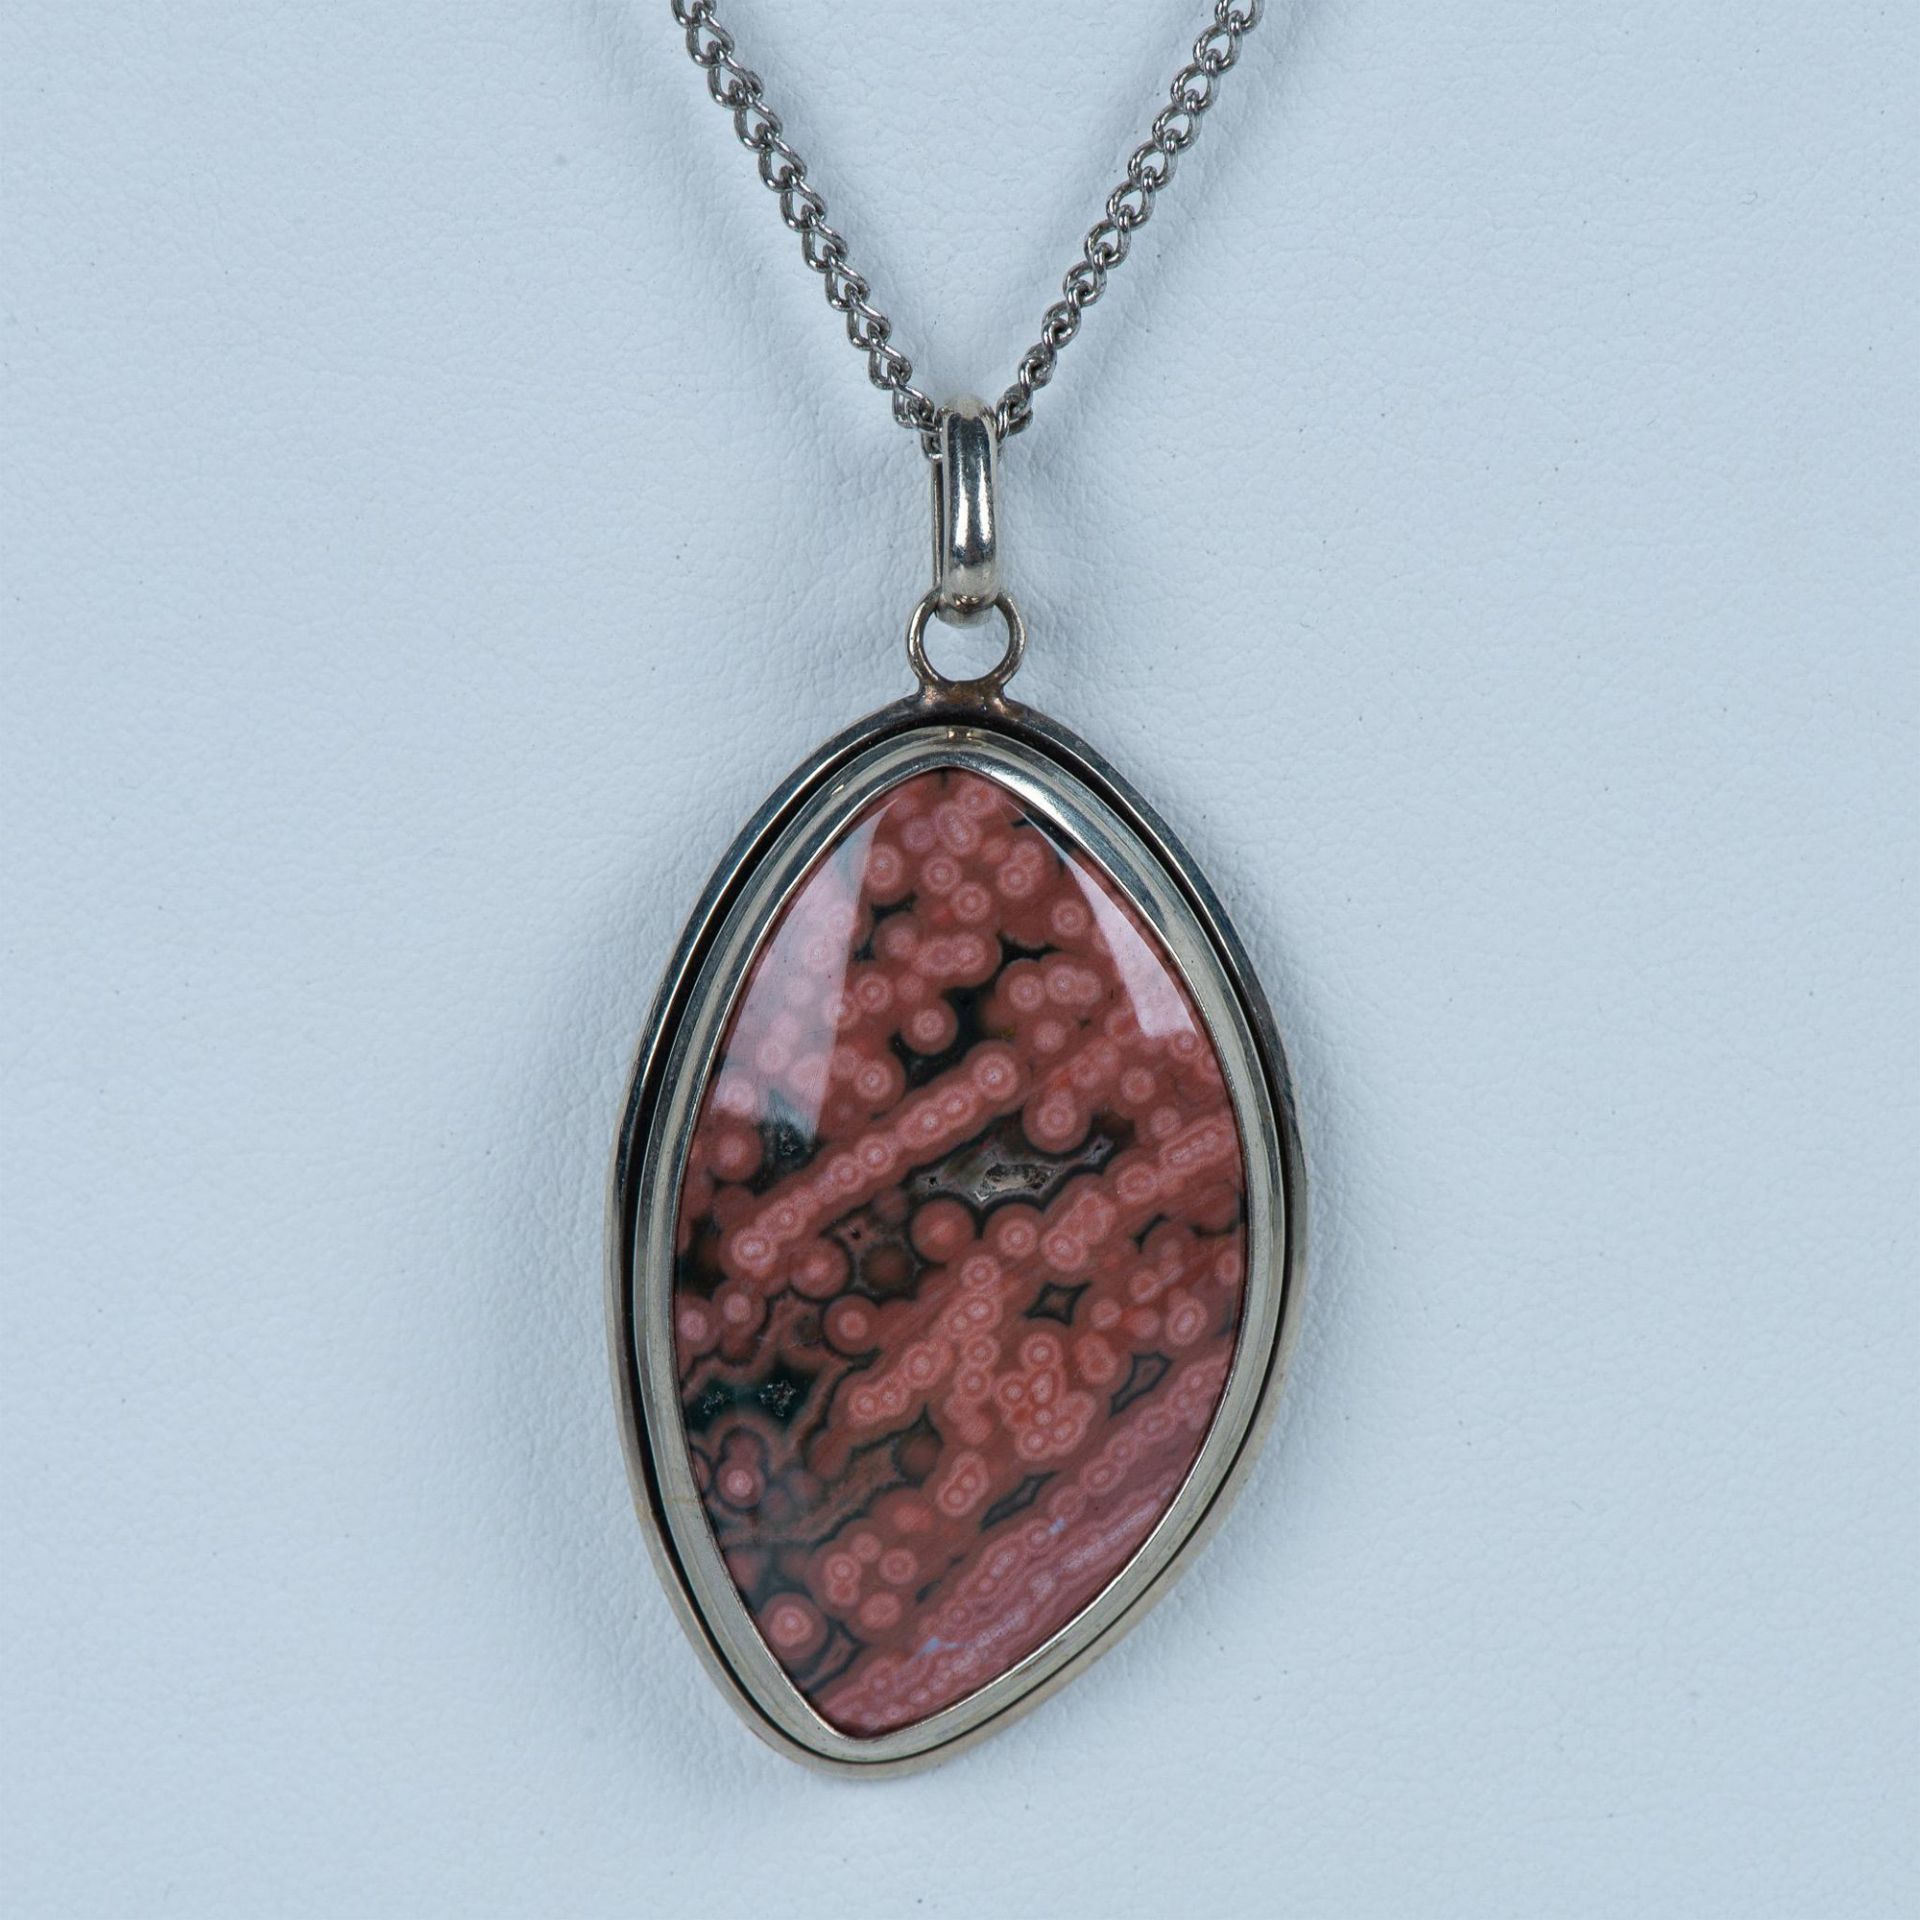 Beautiful Natural Pink Ocean Jasper Pendant Necklace